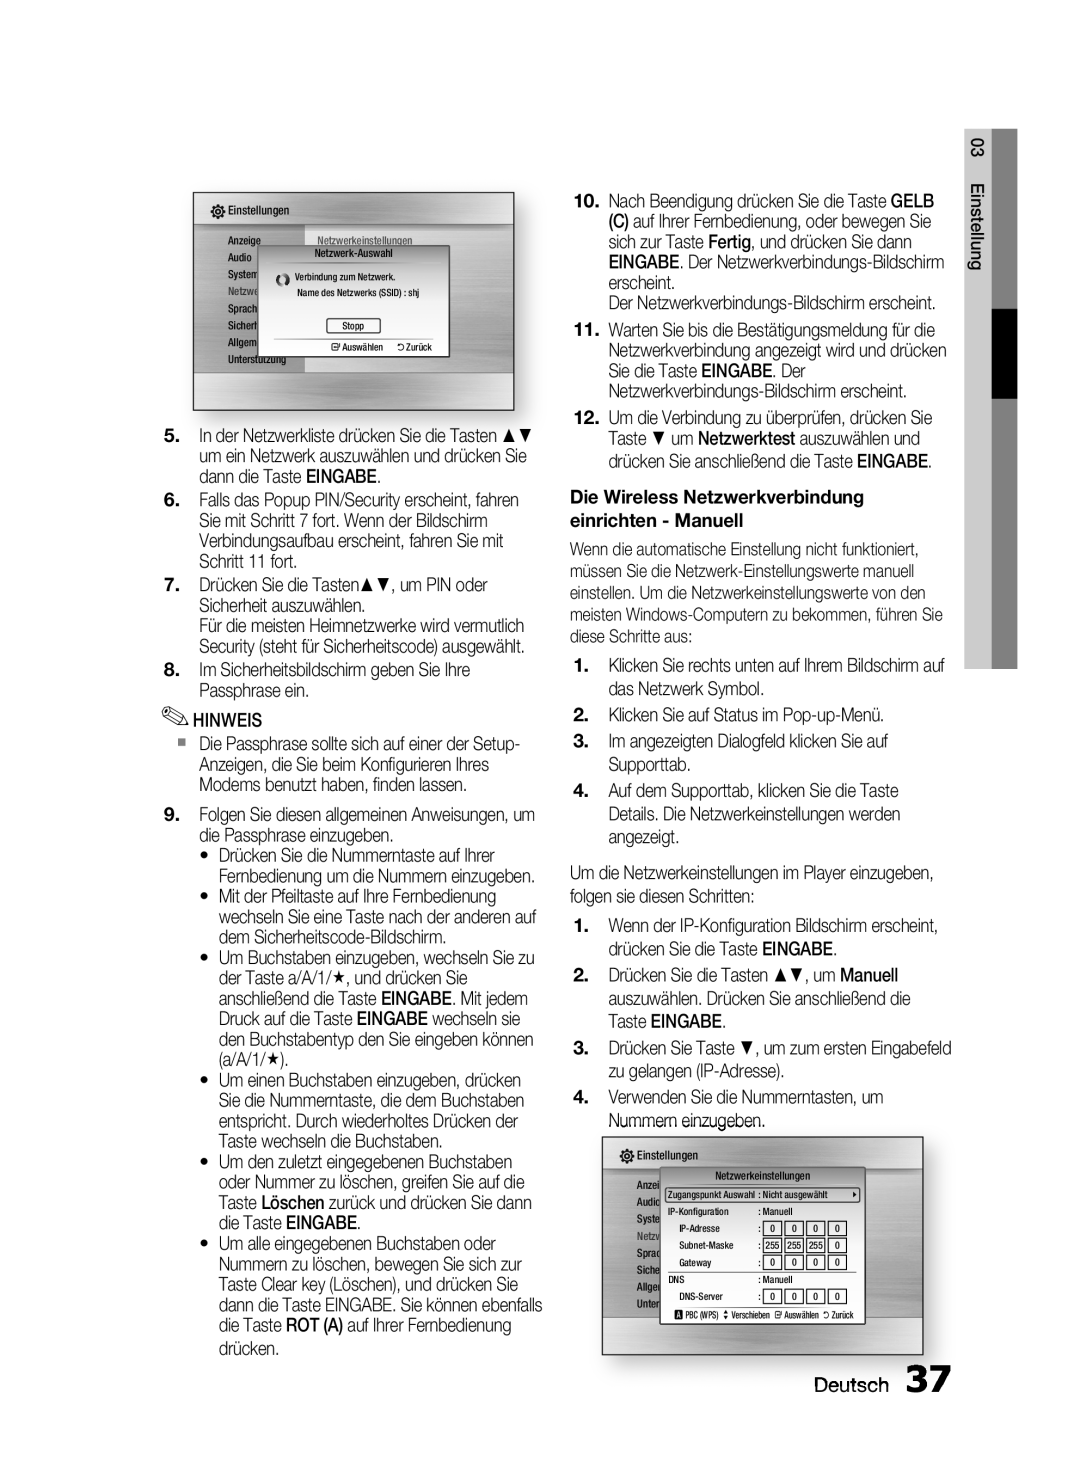 Samsung HT-C6200/EDC, HT-C6200/XEN, HT-C6200/XEF manual Deutsch, Die Wireless Netzwerkverbindung einrichten - Manuell 